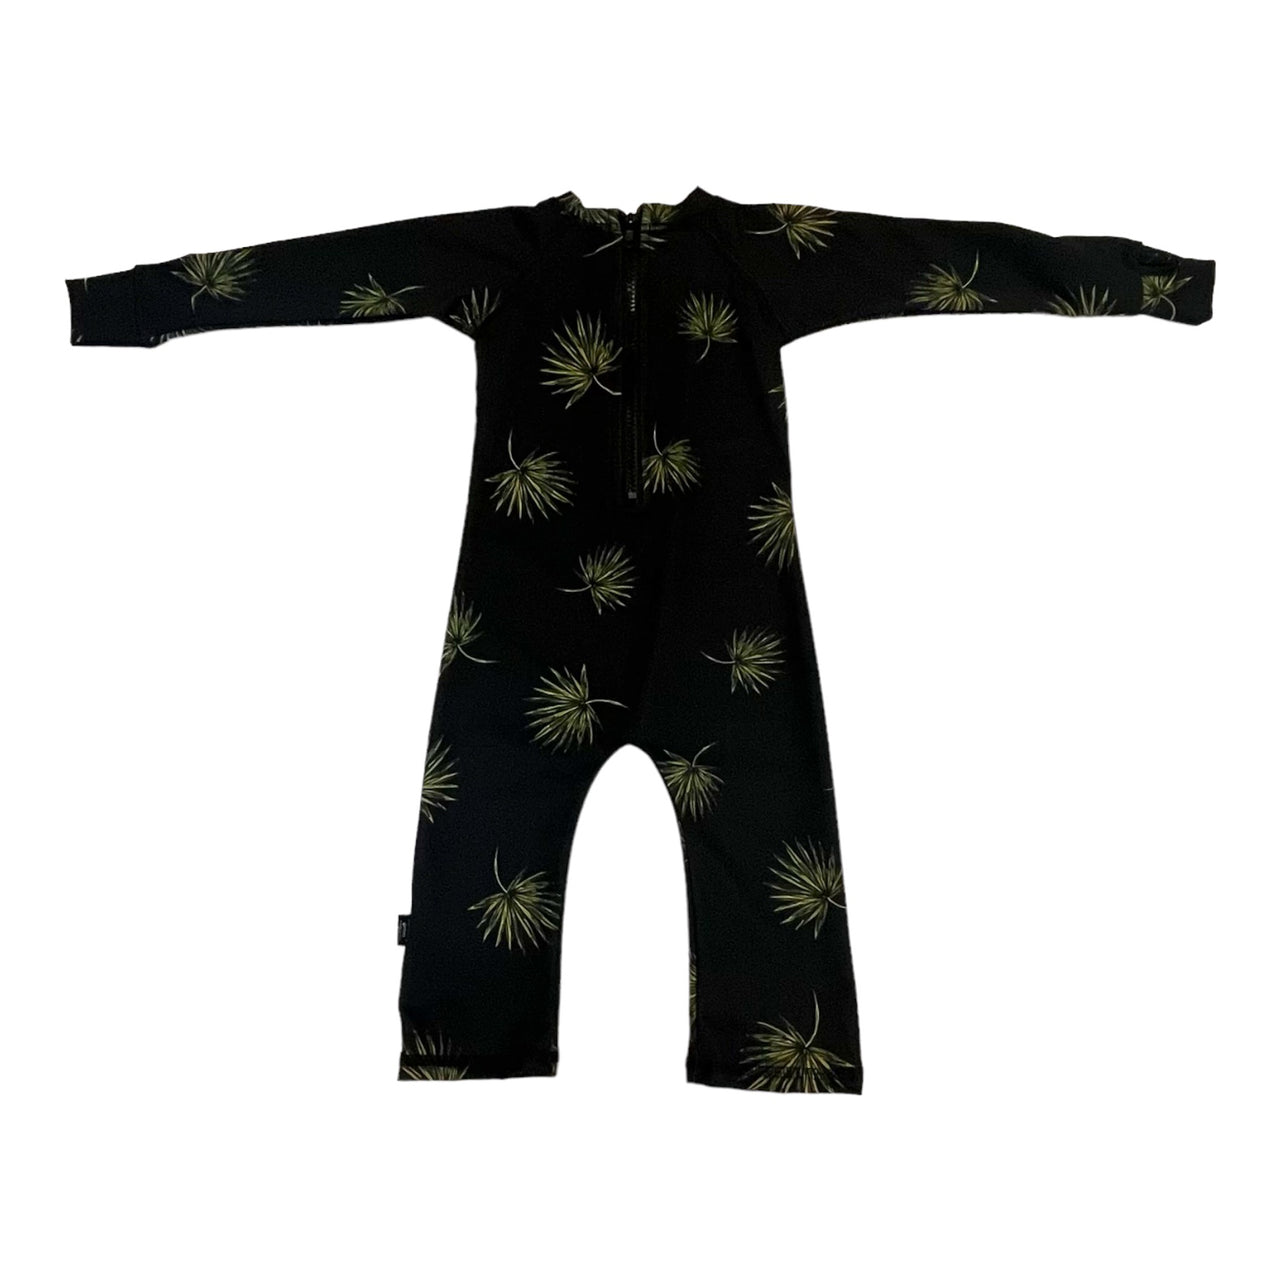 Full SHRED Infant/Toddler Swim Suit